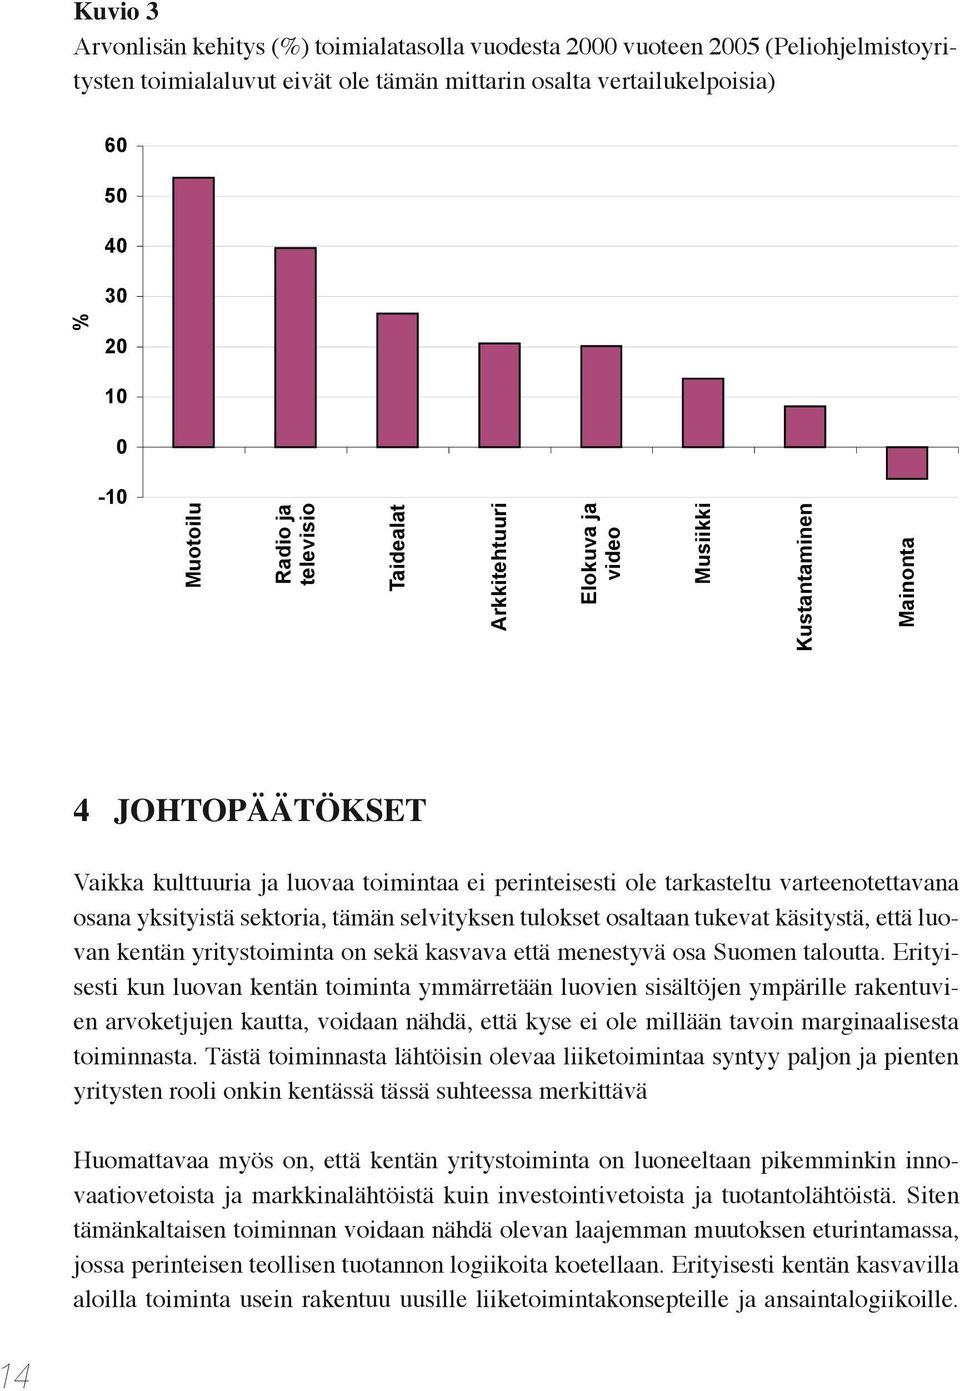 varteenotettavana osana yksityistä sektoria, tämän selvityksen tulokset osaltaan tukevat käsitystä, että luovan kentän yritystoiminta on sekä kasvava että menestyvä osa Suomen taloutta.